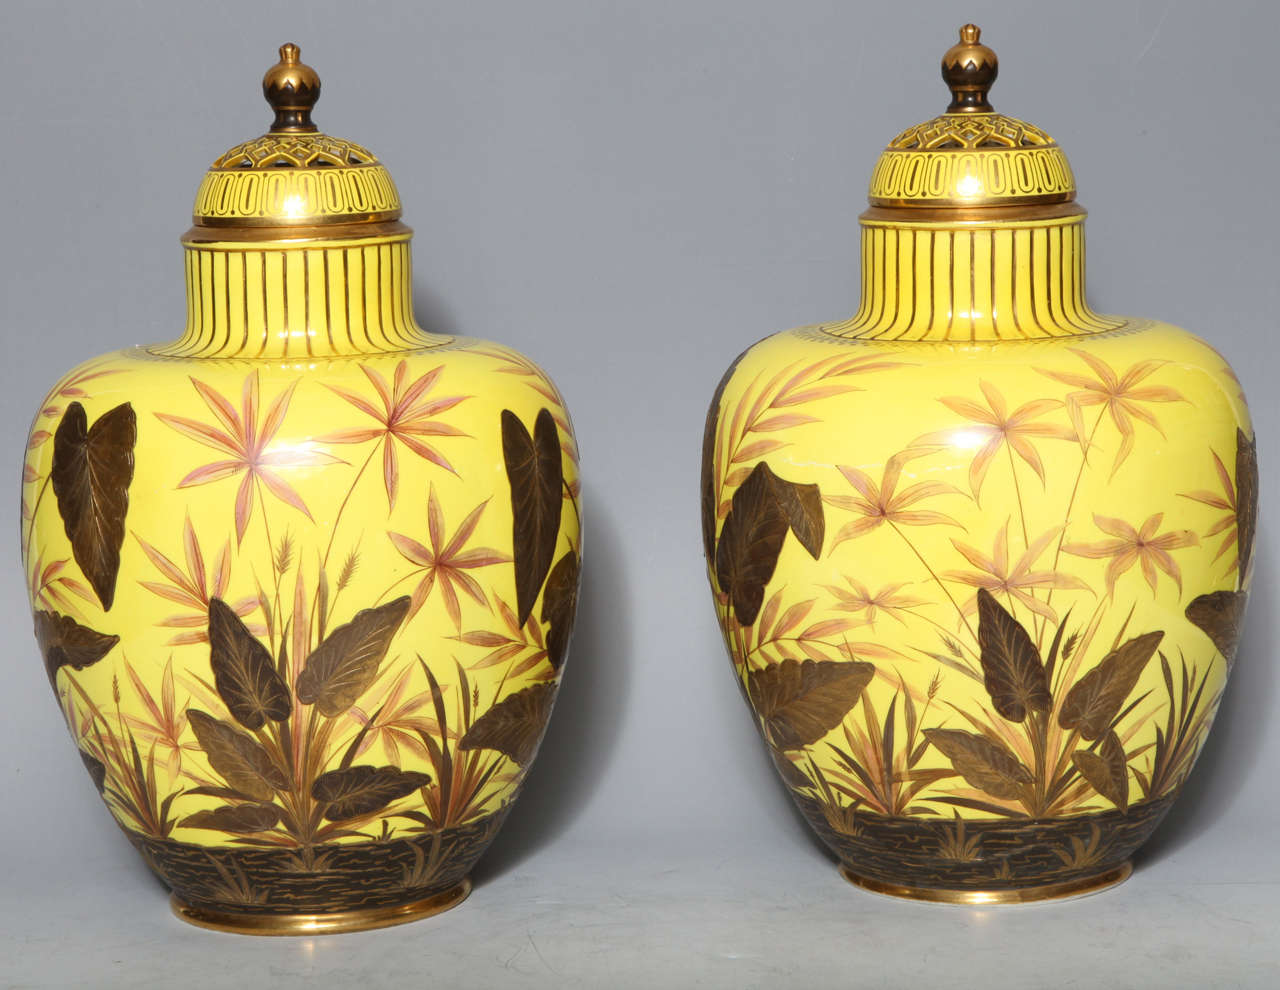 Une paire très inhabituelle d'anciens vases pot-pourri en porcelaine anglaise Royal Crown Derby, à fond jaune, finement peints avec de l'or et de l'émail multicolores 24 carats. Chacun est finement signé à l'intérieur de la couverture réticulée en